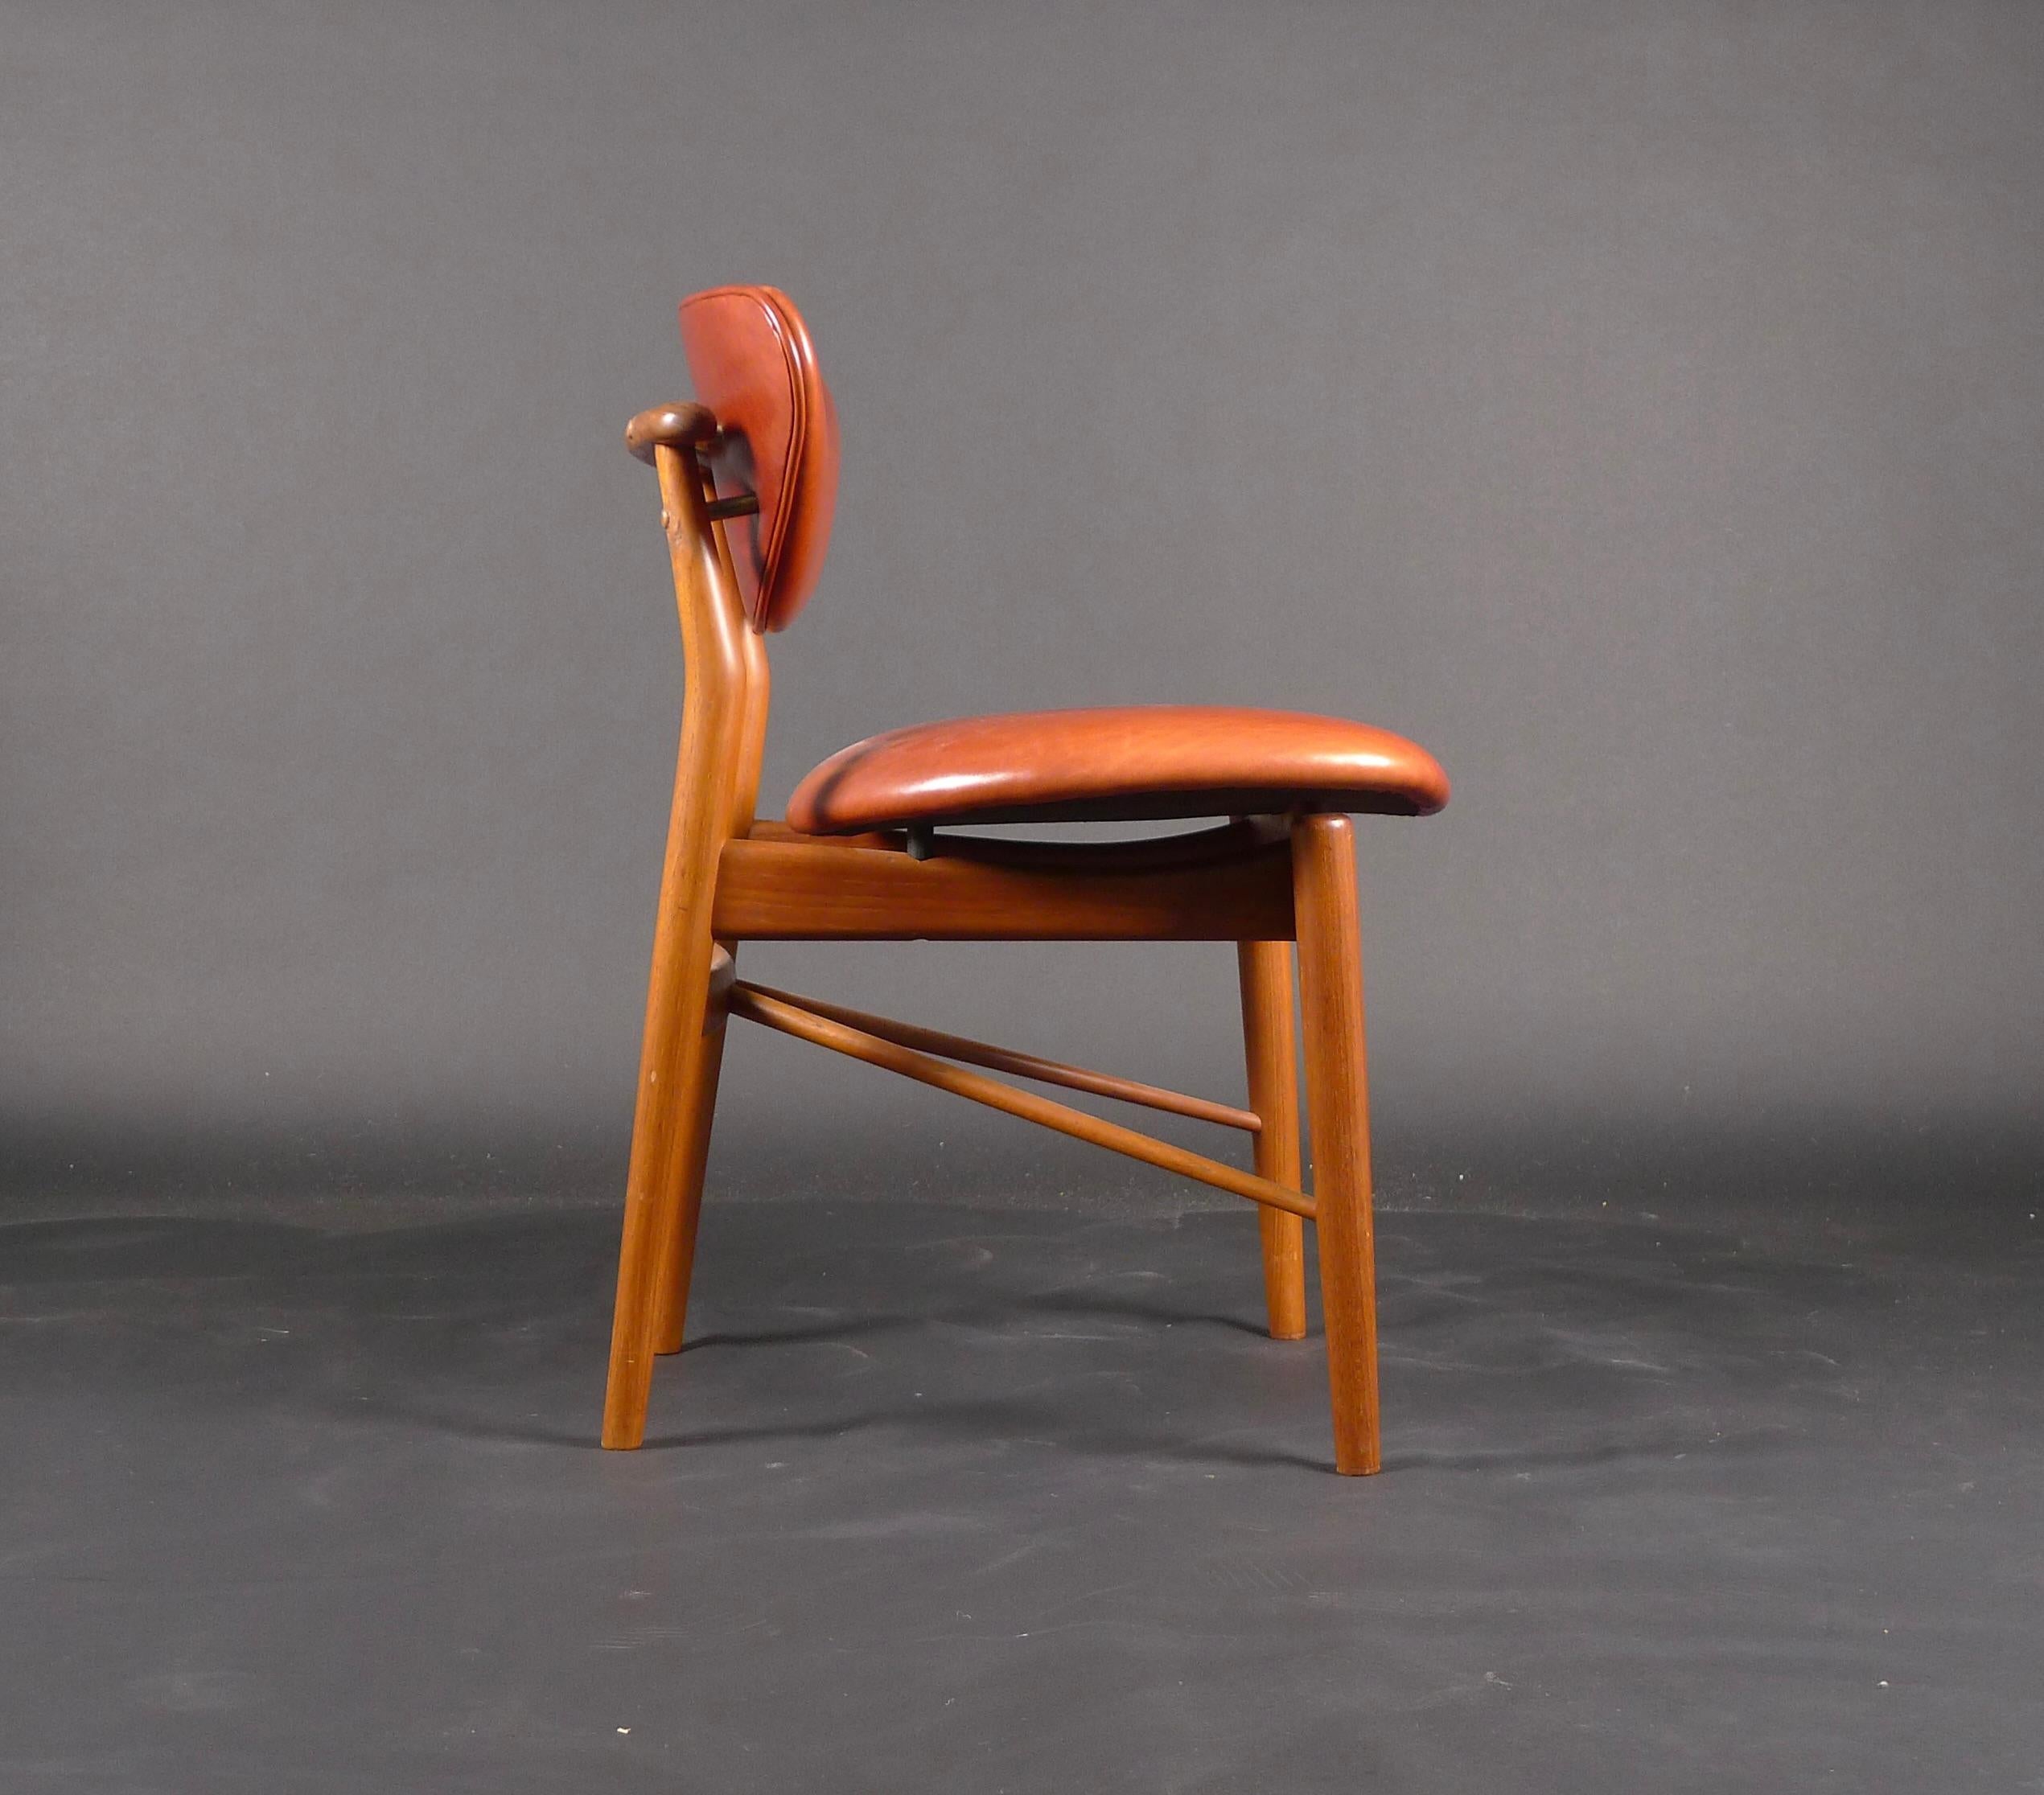 Finn Juhl, Teakholzstuhl 108, 1946, hergestellt von Niels Vodder, Kopenhagen, gestempelt

Es handelt sich um einen frühen Originalstuhl, der von dem Tischler Niels Vodder in Kopenhagen hergestellt wurde und die gestempelte Marke trägt (siehe